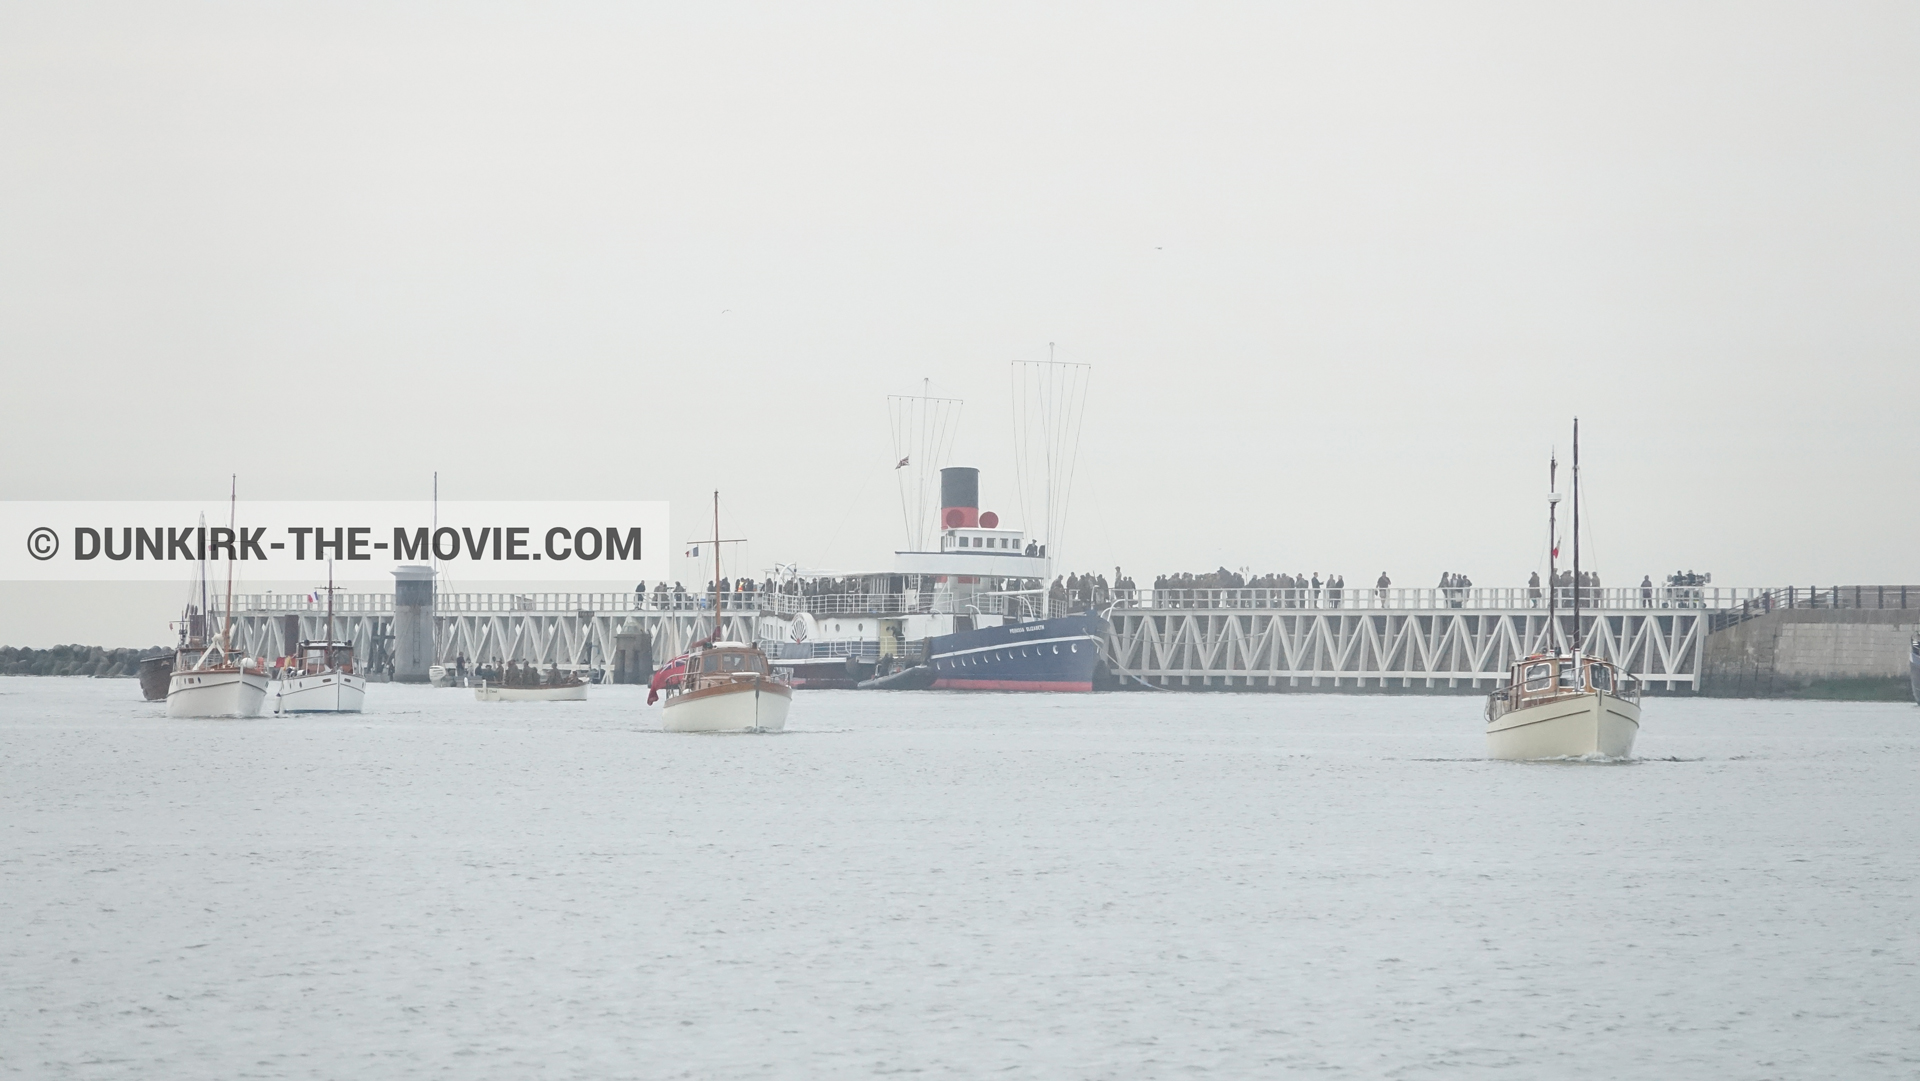 Fotos con barco, muelle del ESTE, Princess Elizabeth,  durante el rodaje de la película Dunkerque de Nolan